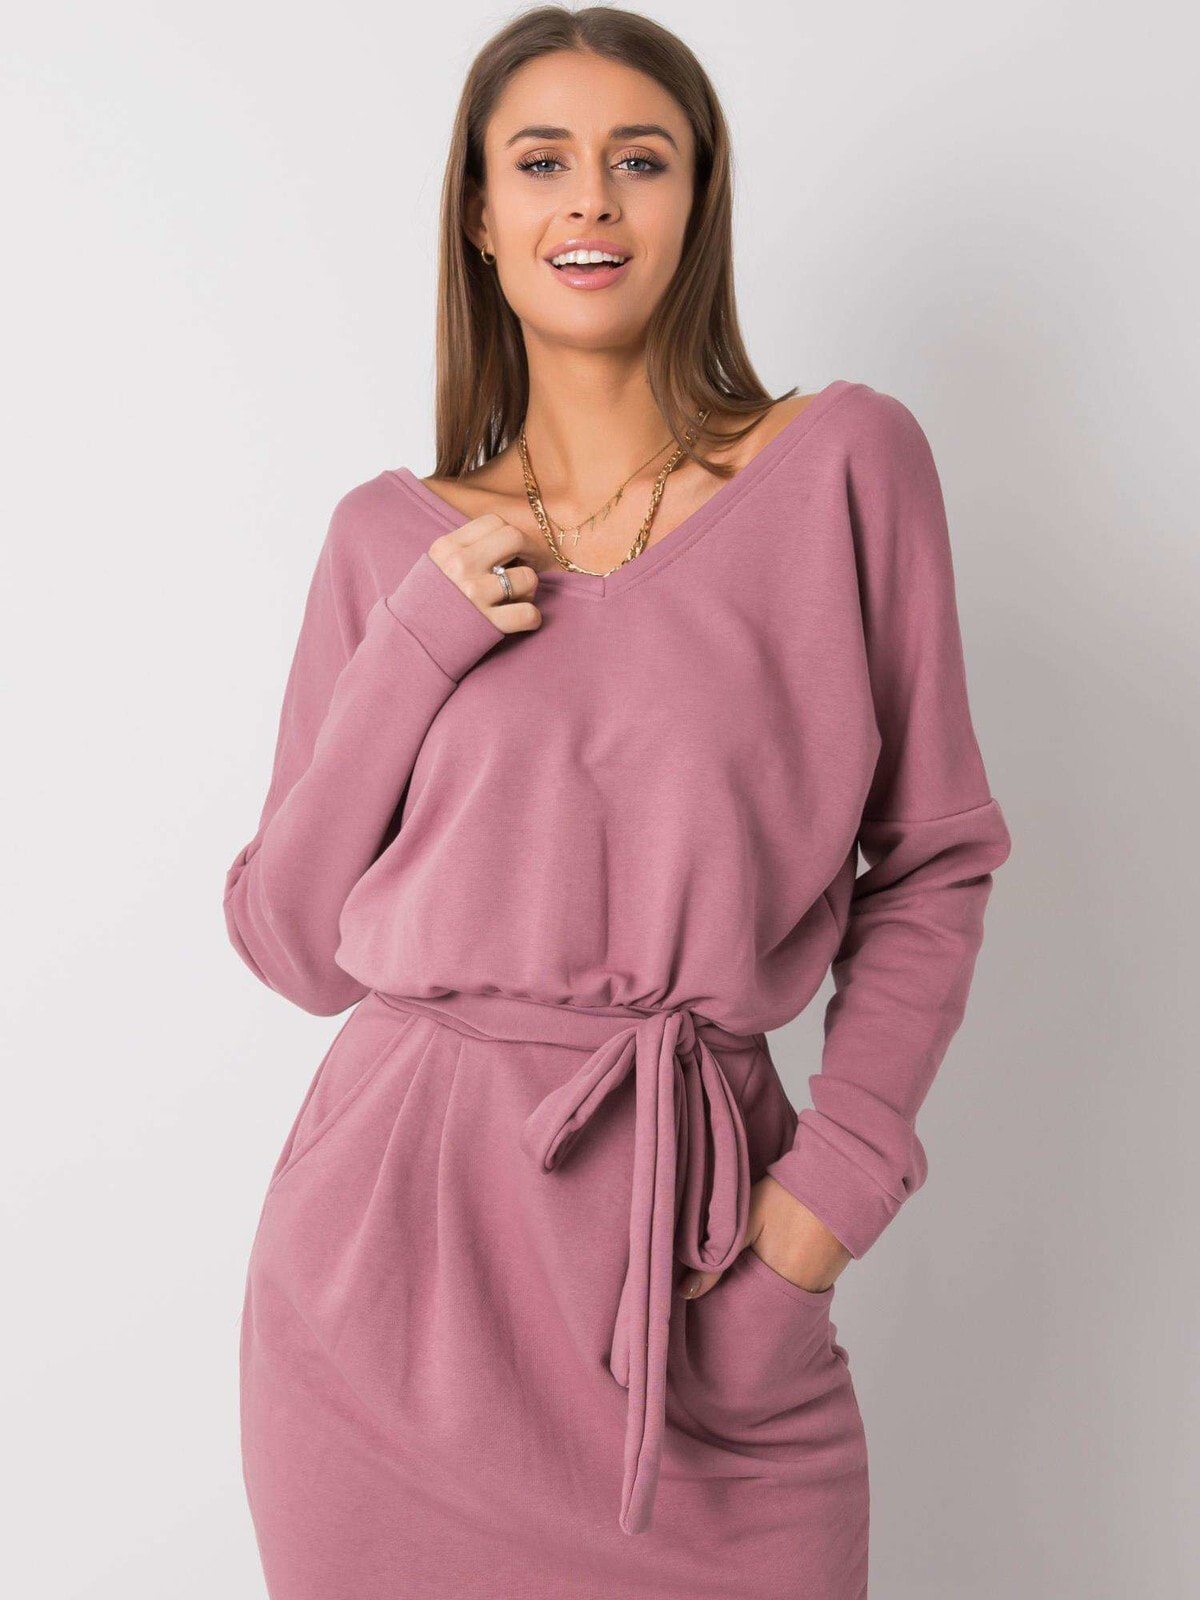 Женское трикотажное платье с длинным рукавом с поясом на талии пыльно розового цвета Factory Price